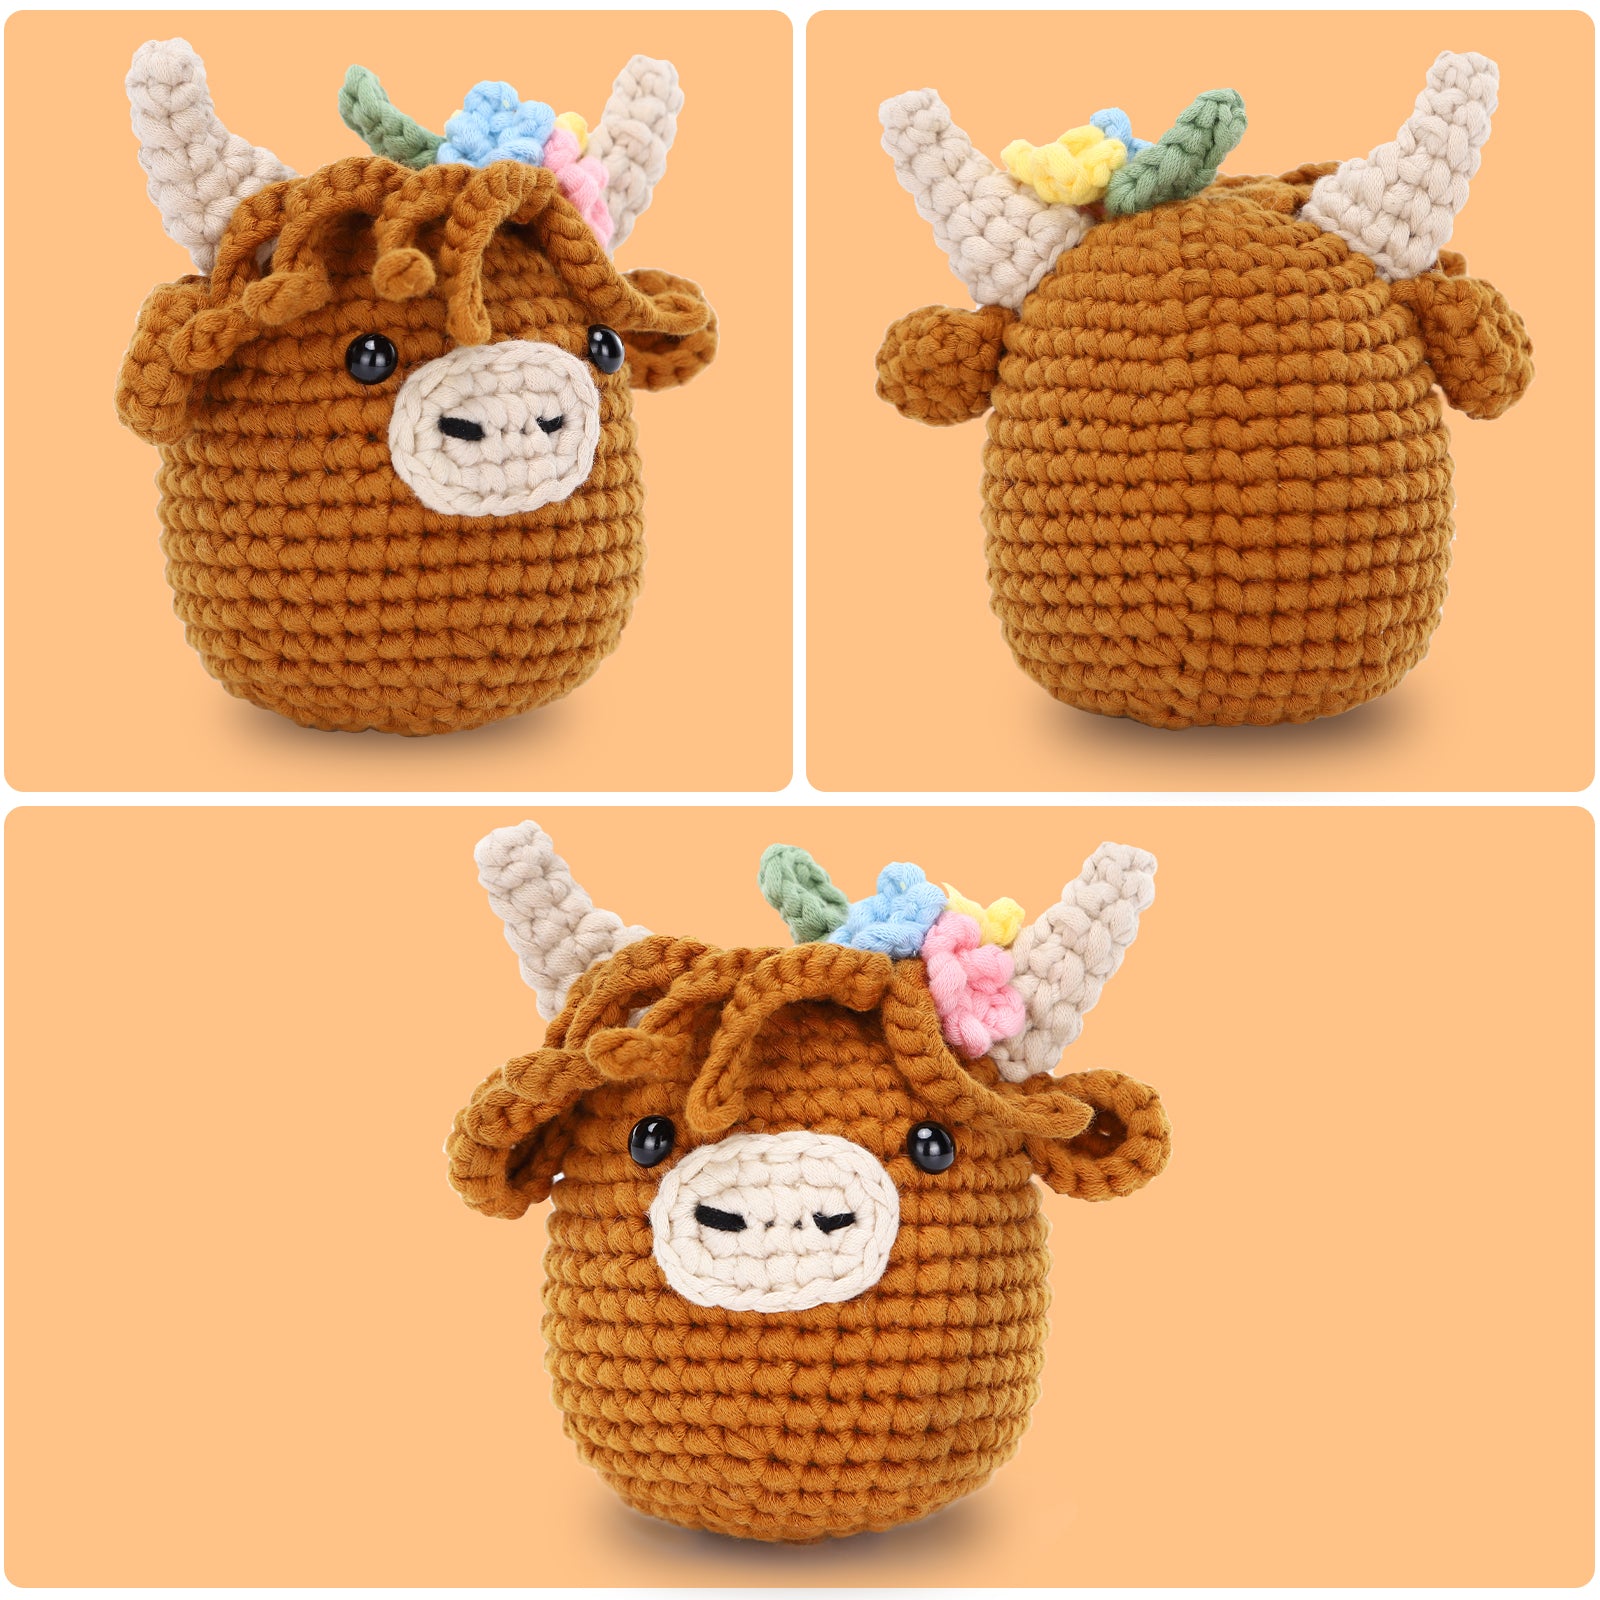 Beginner Cow Crochet Kit - Easy Crochet Starter Kit - Crochet